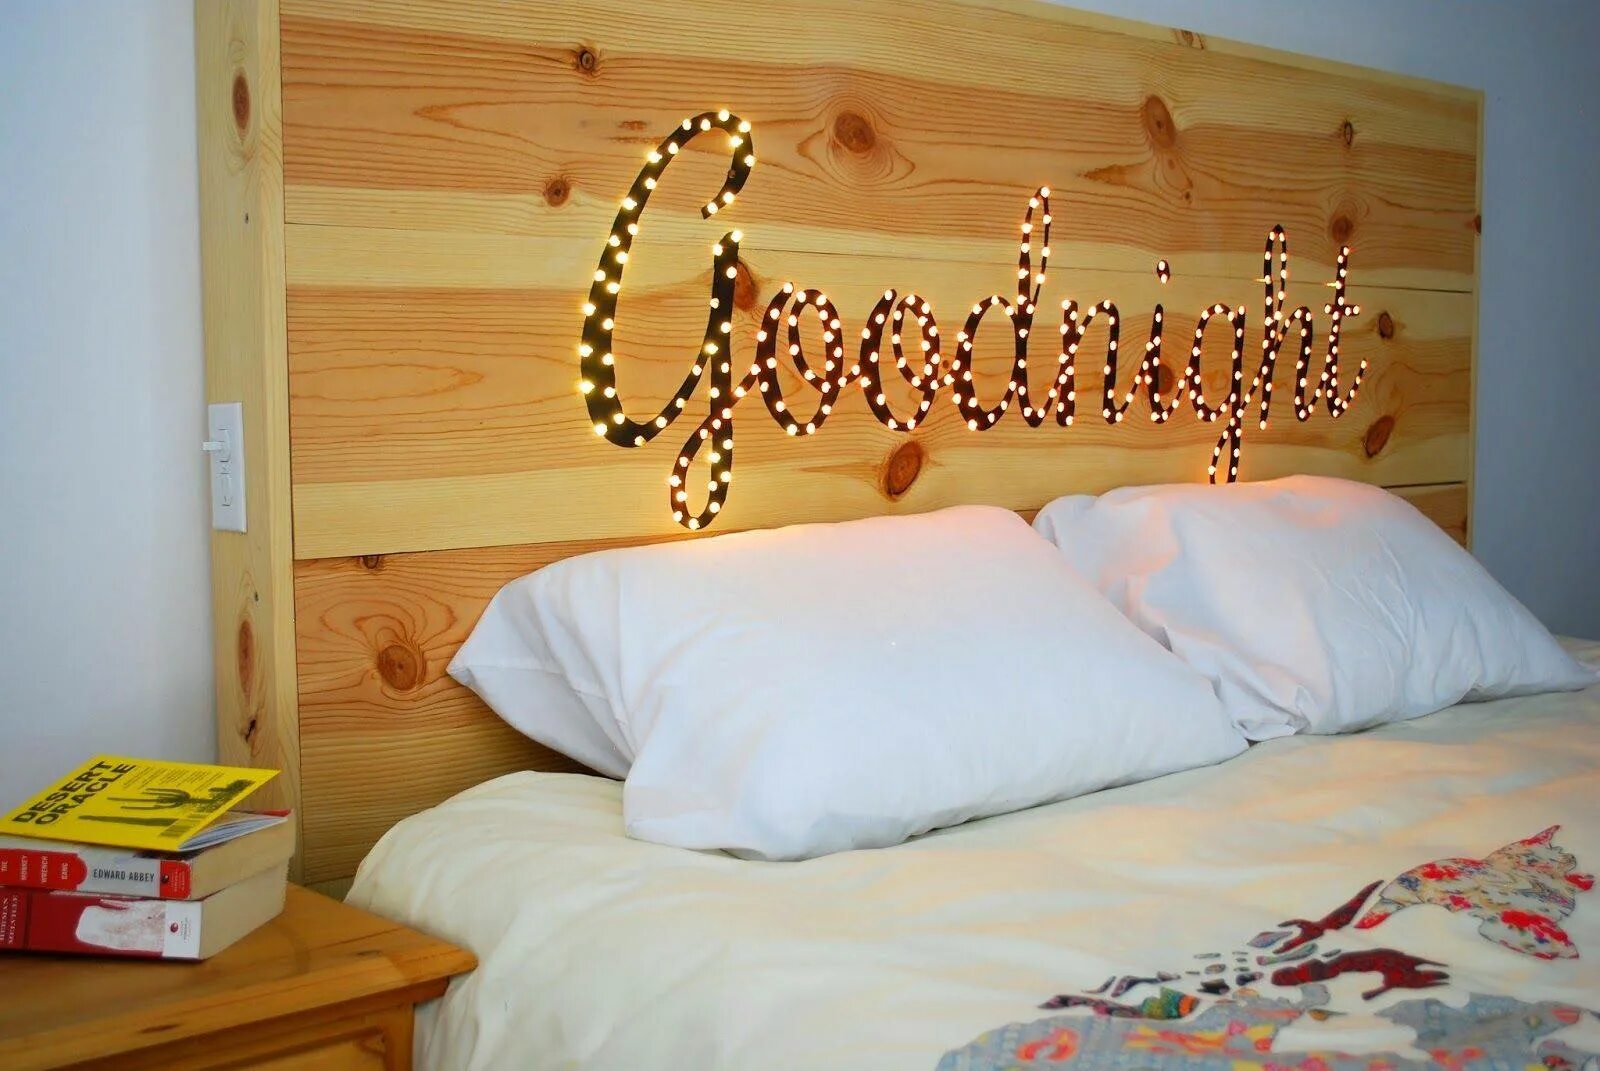 Изголовье кровати из дерева. Украшения для кровати. Декор кровати. Декор деревянной кровати. Гирлянда над кроватью в спальне.